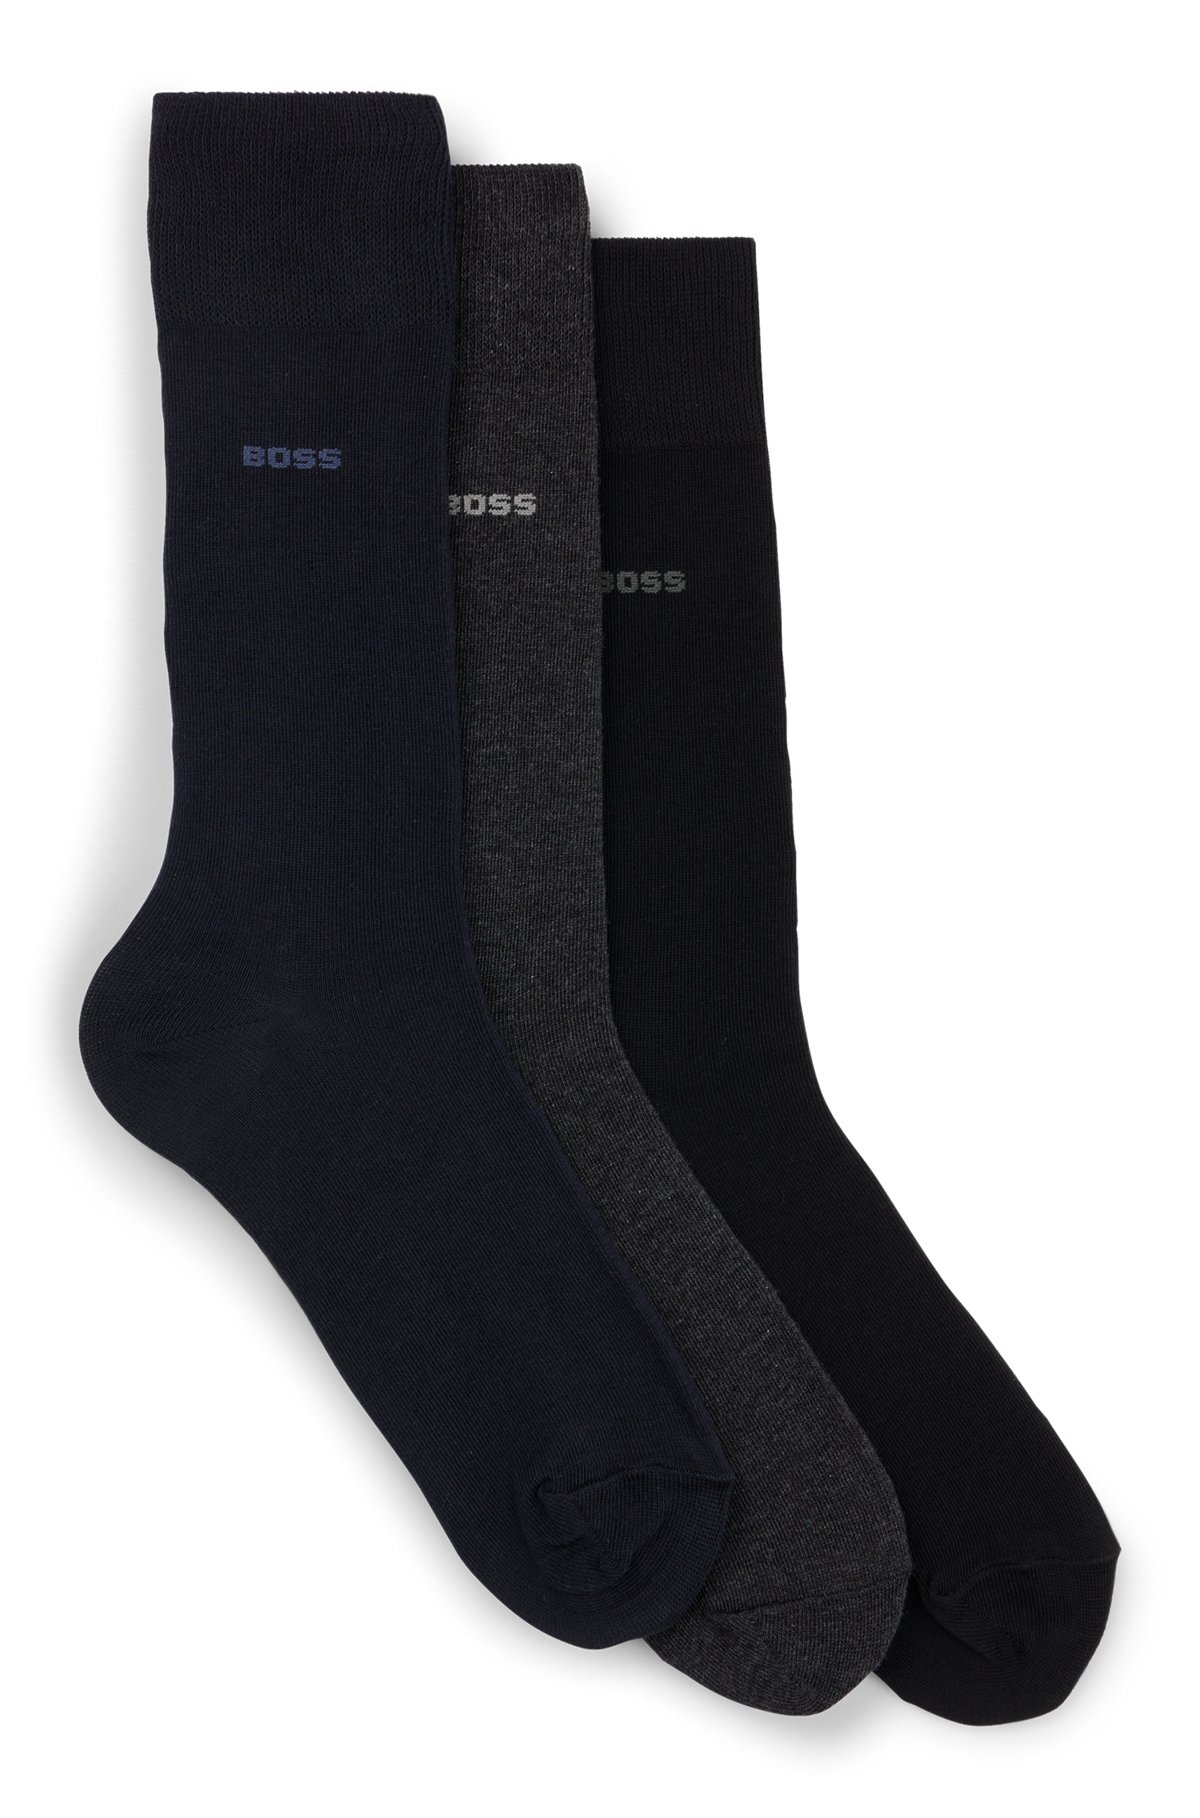 Conjunto de três pares de meias regulares em tecido elástico, Preto / Cinzento / Azul